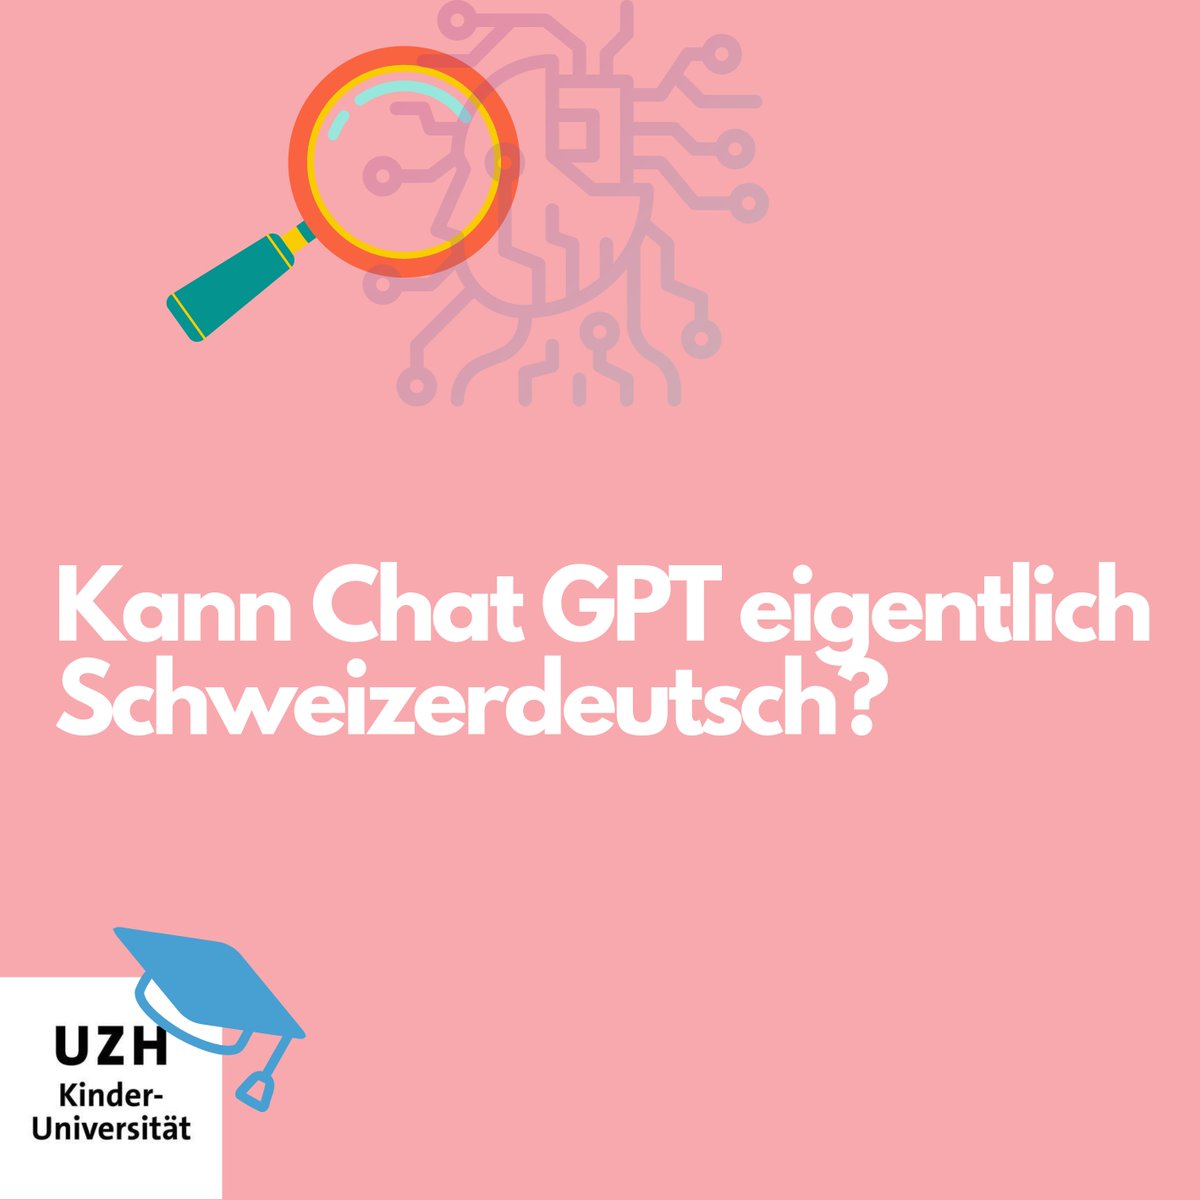 Chat GPT versteht 

…Schweizerdeutsch und kann sogar auf Schweizerdeutsch antworten!
Jetzt selbst testen und versuchen, den Dialekt zu erraten 🤓

#kinderuniversität 
#kinderuni 
#uzh
#ki
#ai
#chatgpt 
#künstlicheintelligenz 
#artificialintelligence